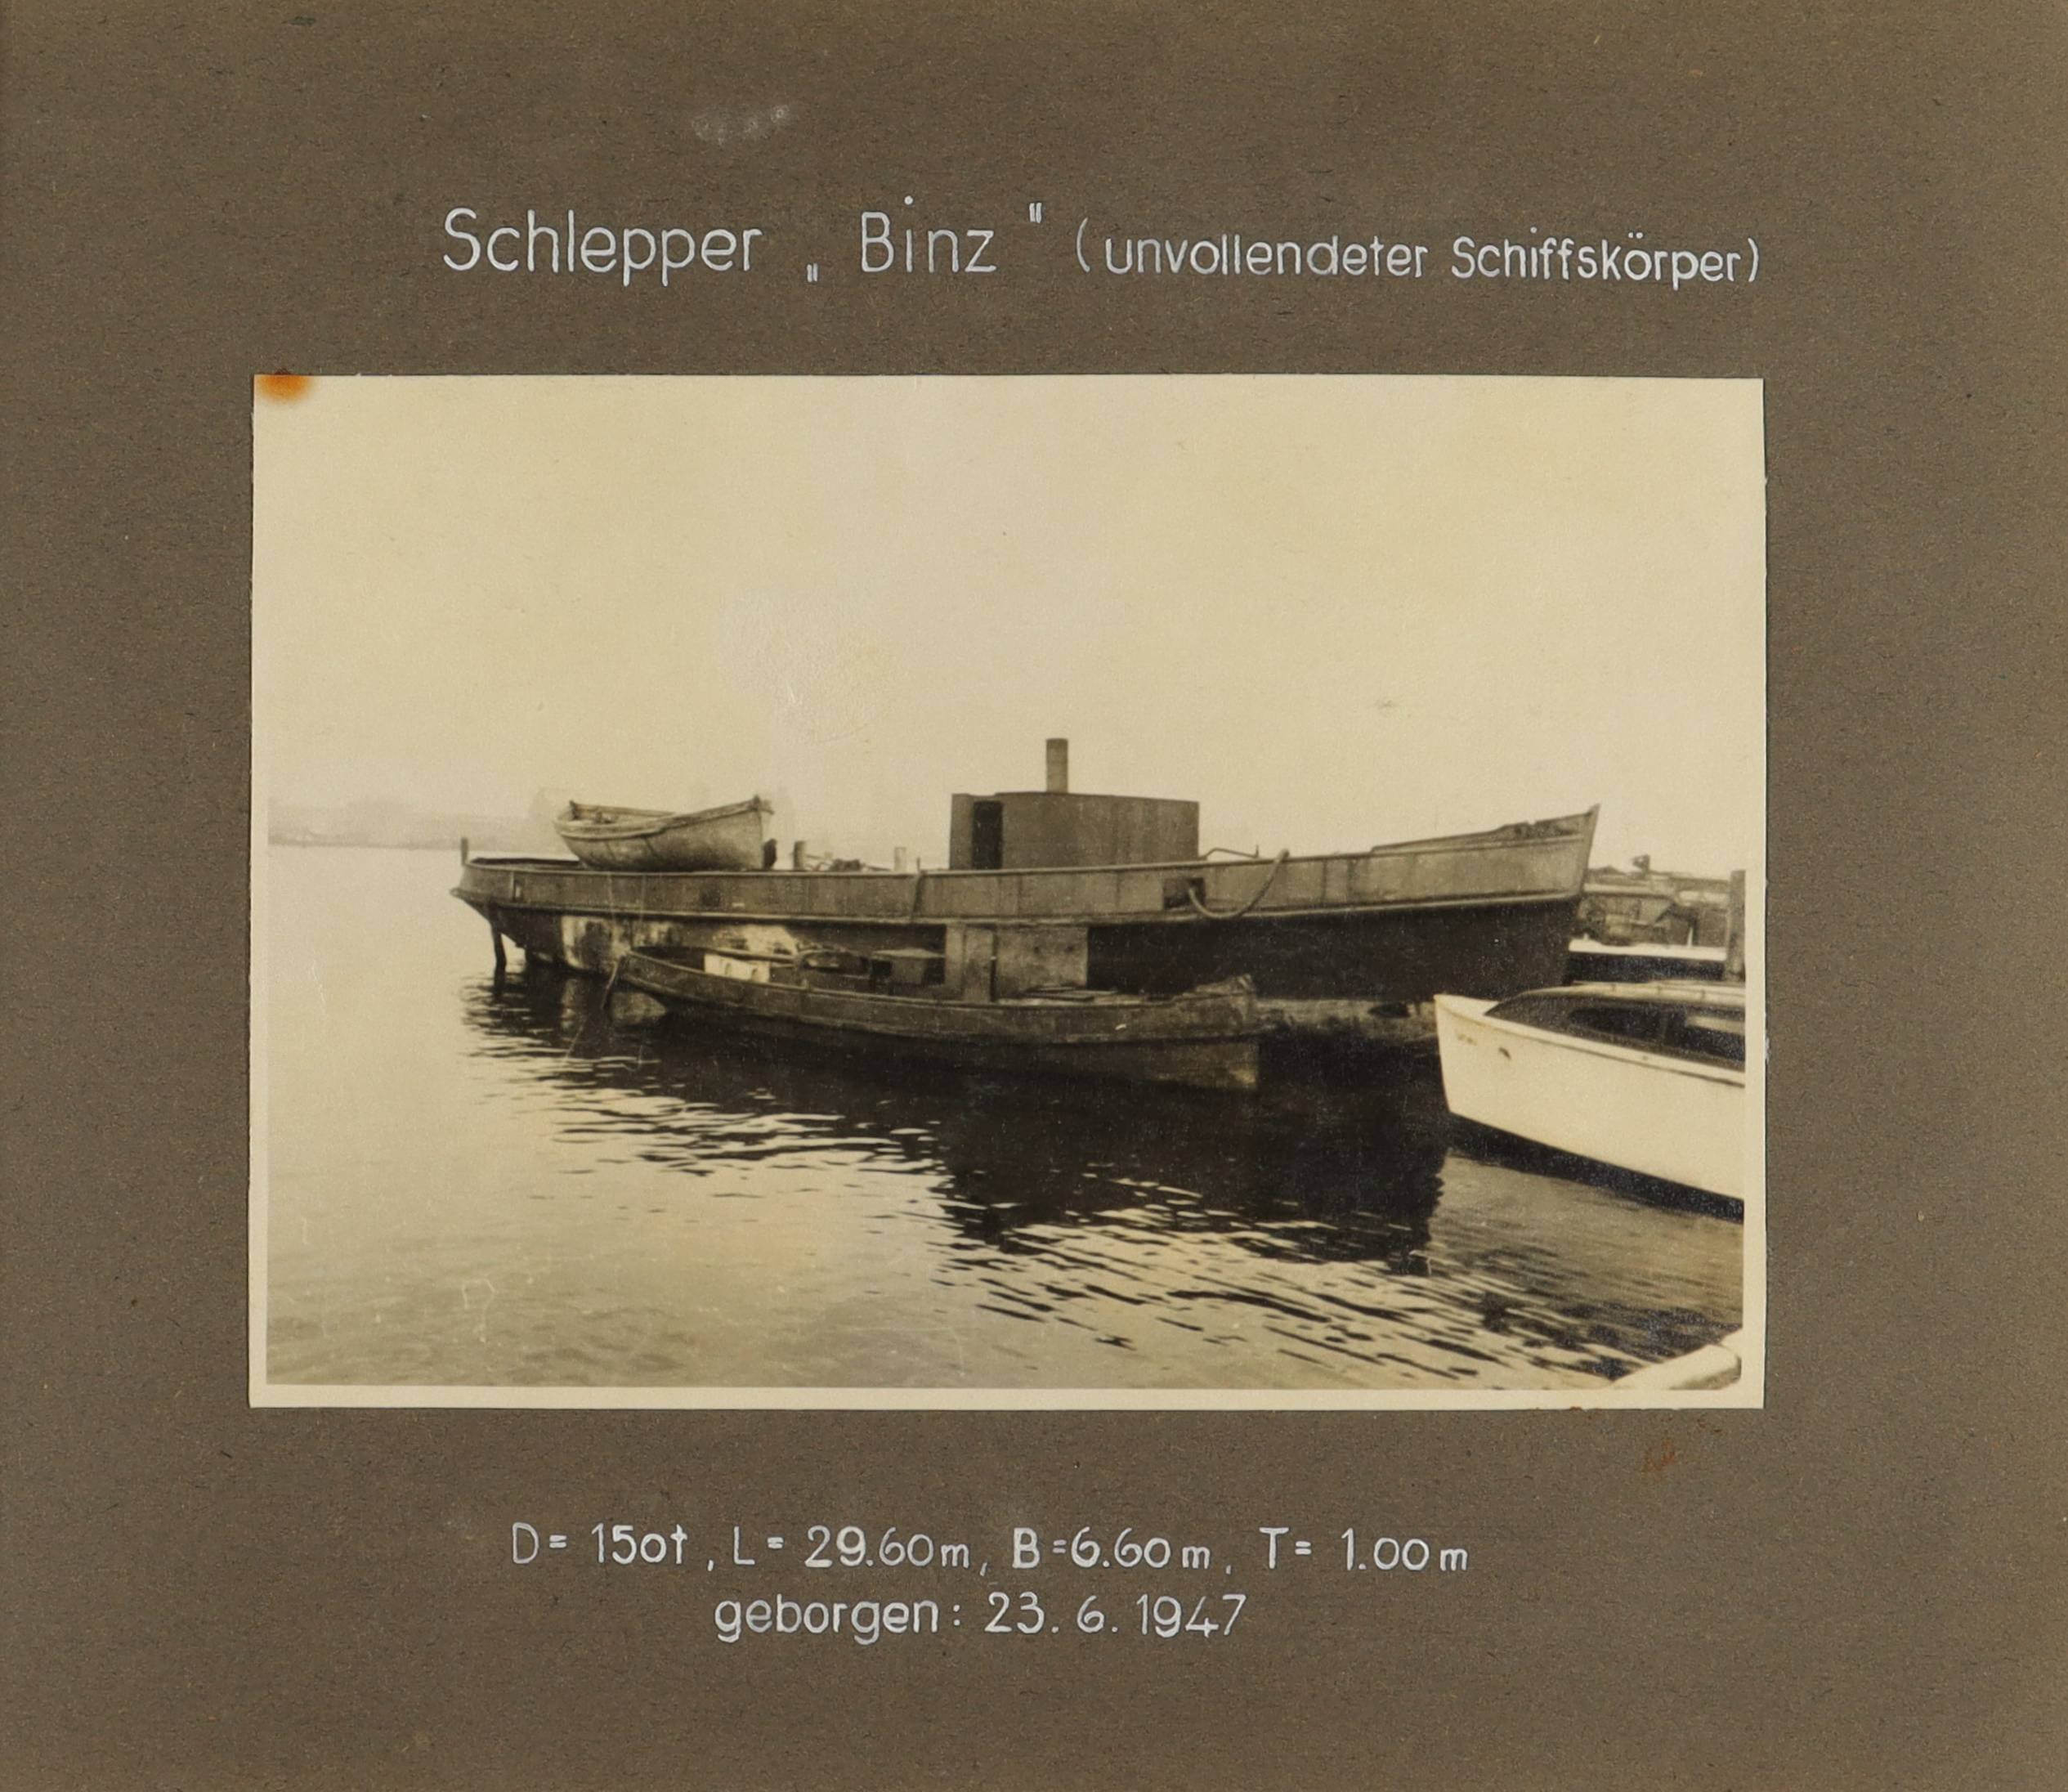 Der unvollendete Schiffskörper des Schleppers "Binz" (Schiffbau- und Schiffahrtsmuseum Rostock RR-F)